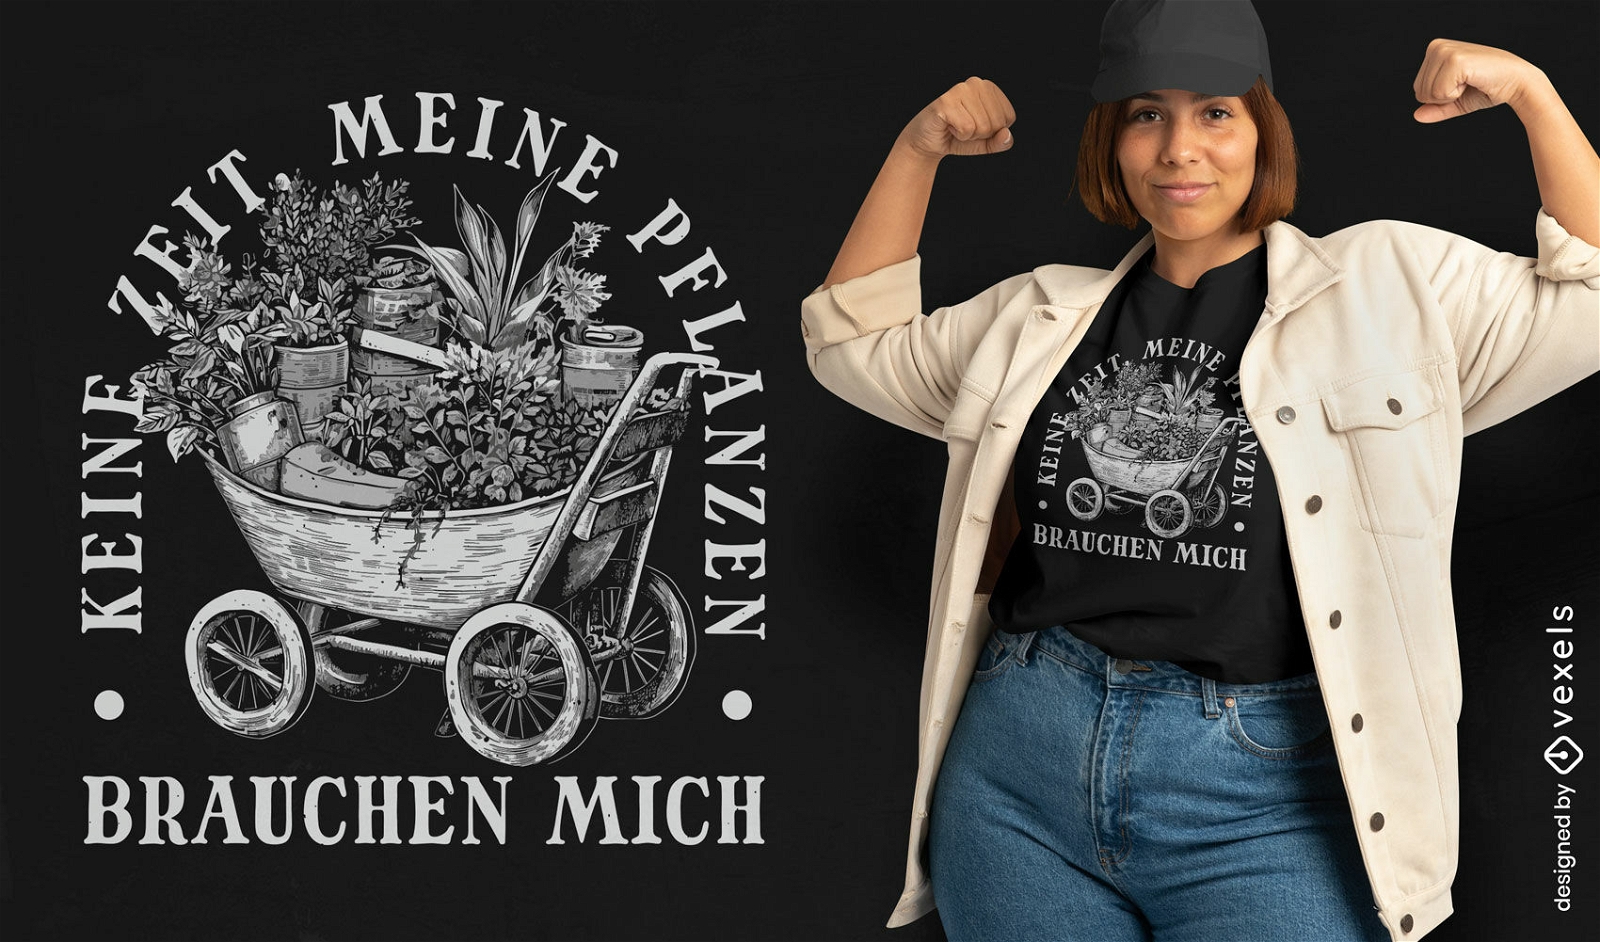 Diseño de camiseta de refrán alemán de jardinería.